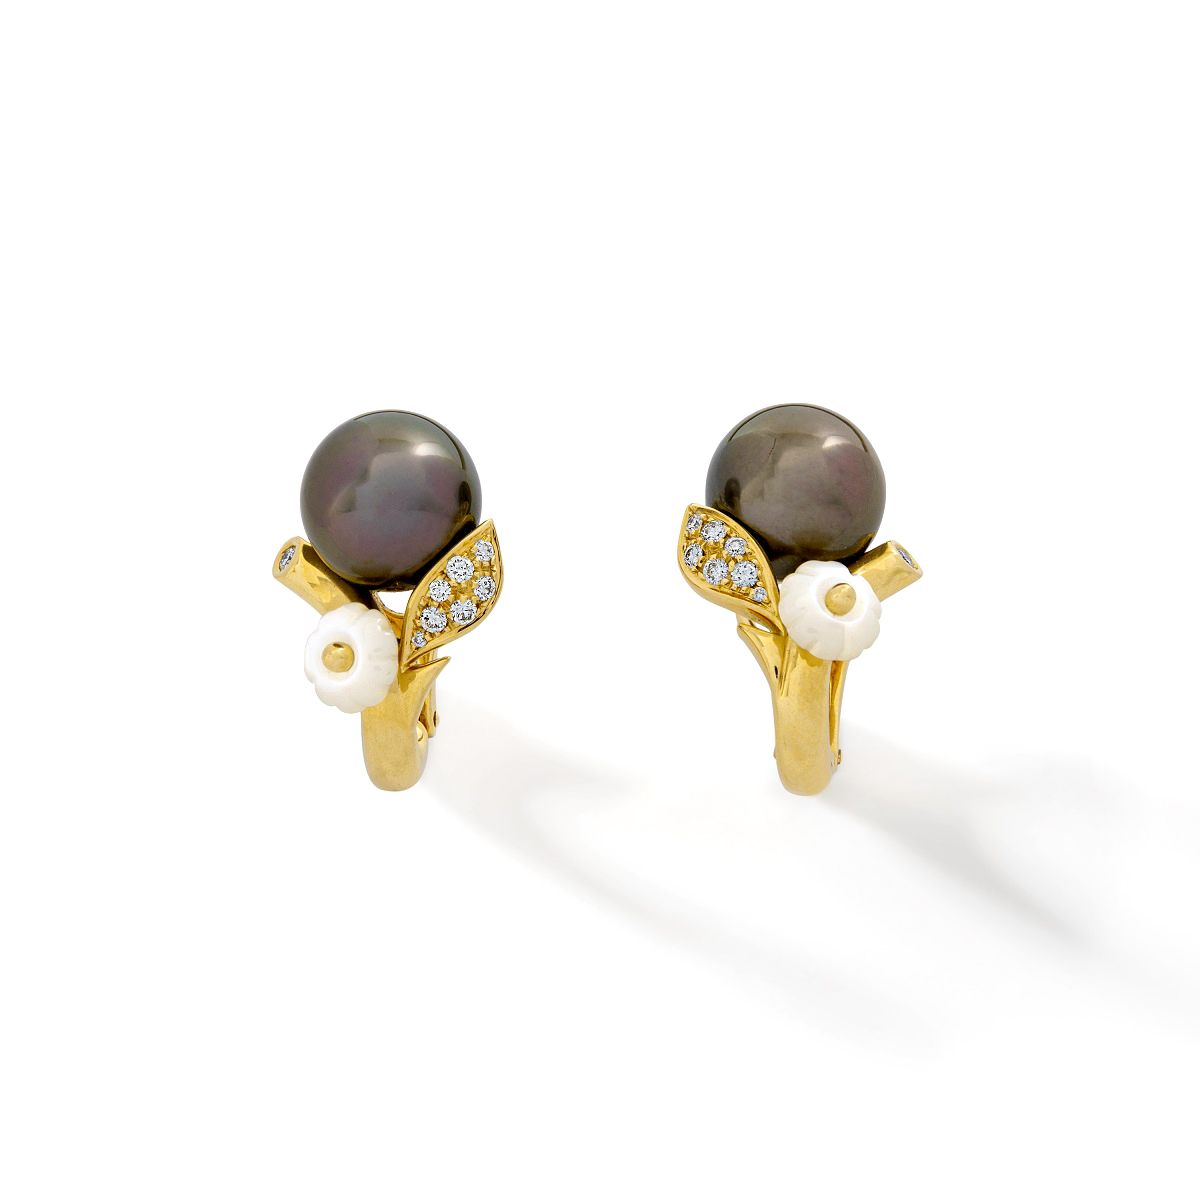 Null 18K黄金耳环，搭配黑色养殖珍珠、钻石叶子和珍珠母花

尺寸：25 x 15 mm

毛重 : 17,88 g